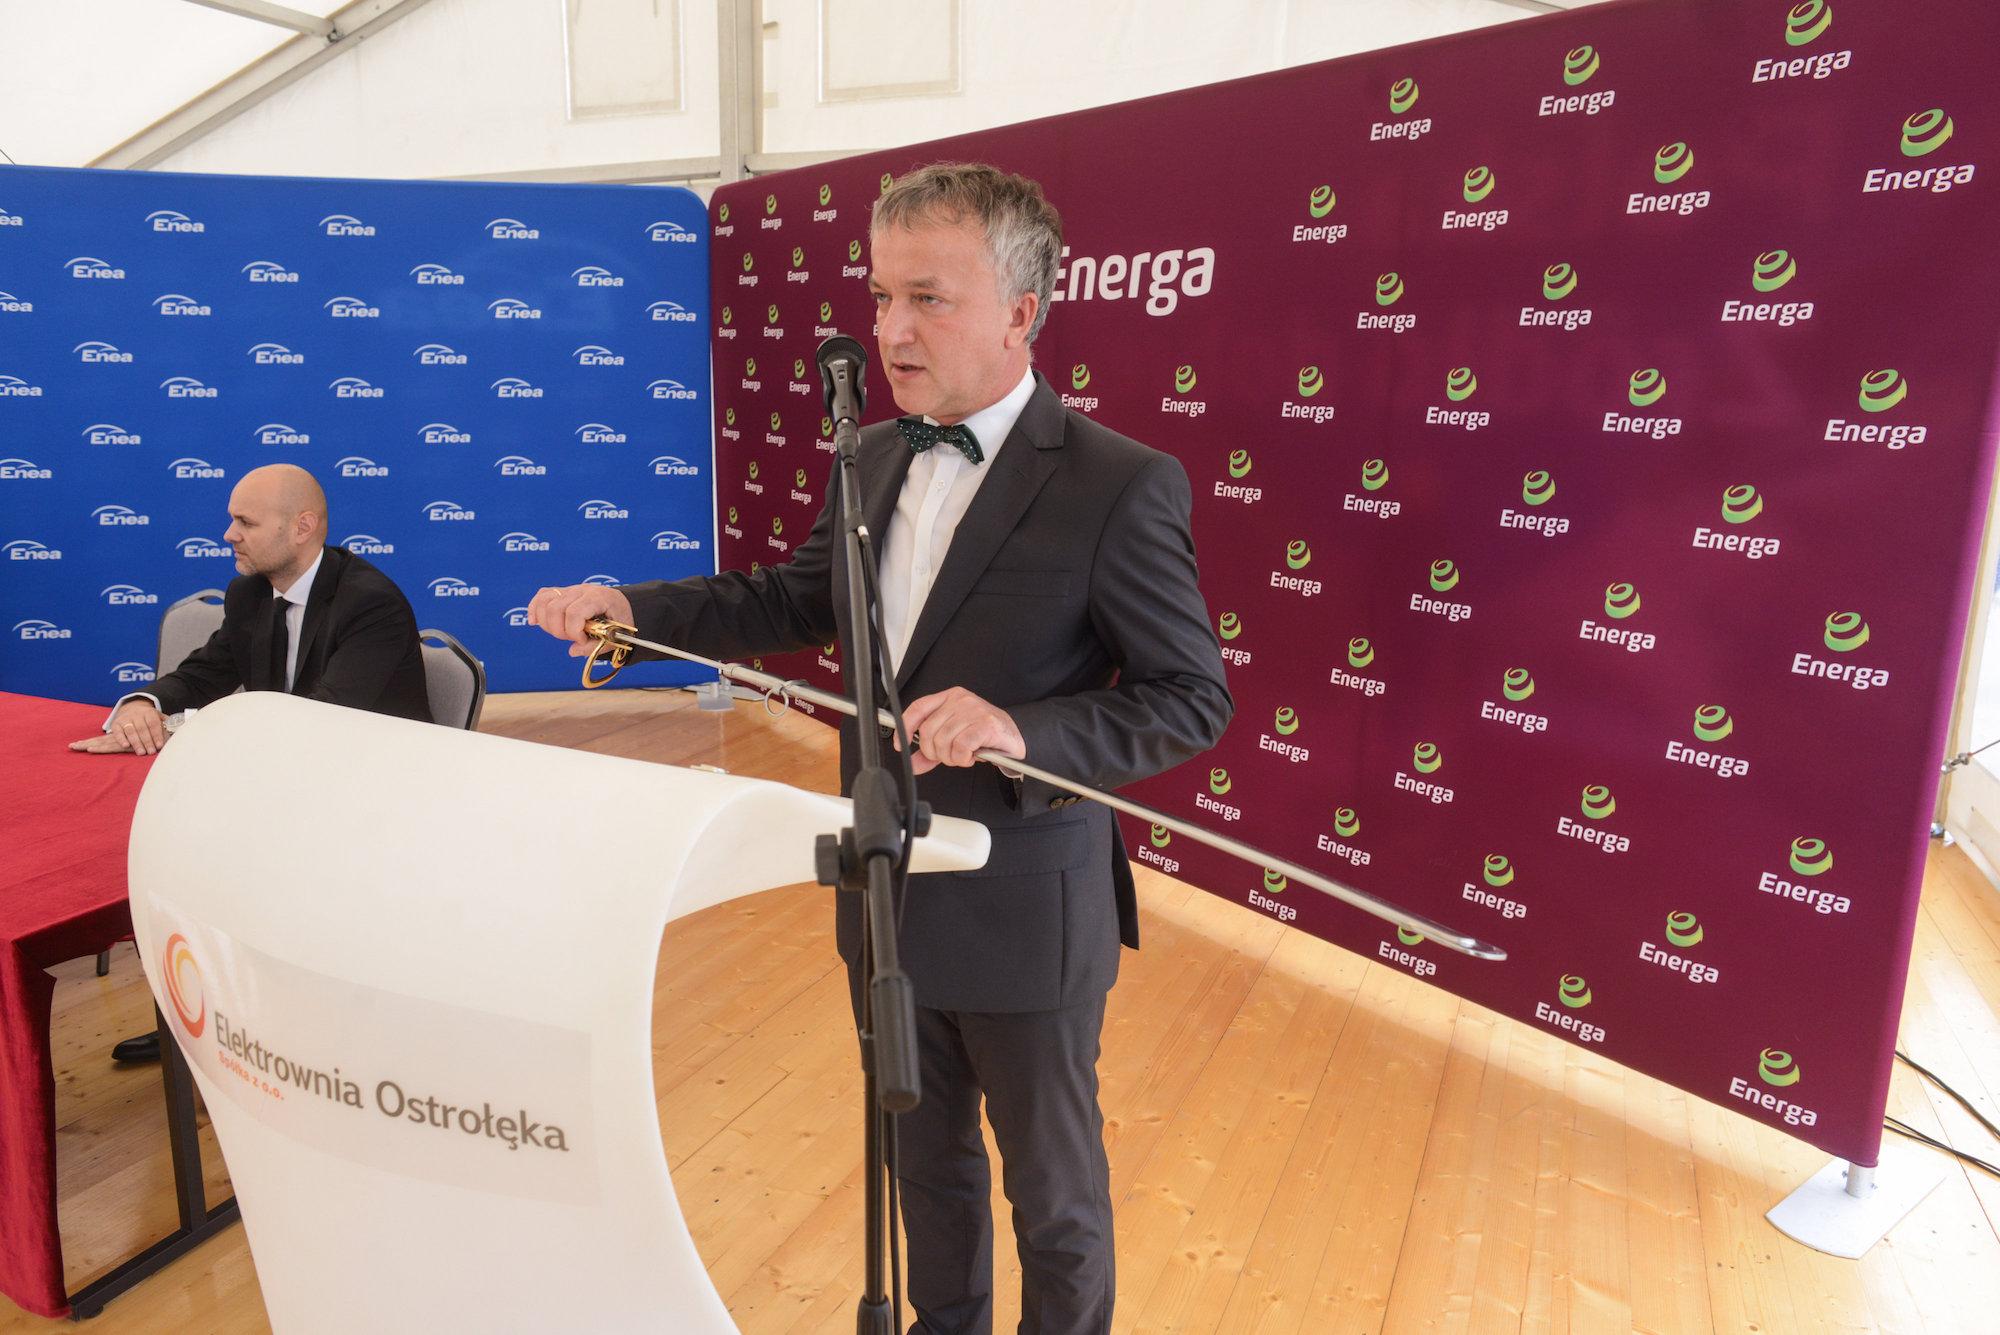 Ówczesny prezydent Ostrołęki Janusz Kotowski w smokingu i czarnej muszce przemawia na konferencji prasowej. W ręku trzyma szablę, stoi na tle ścianek z logo firm Energa i Enea.